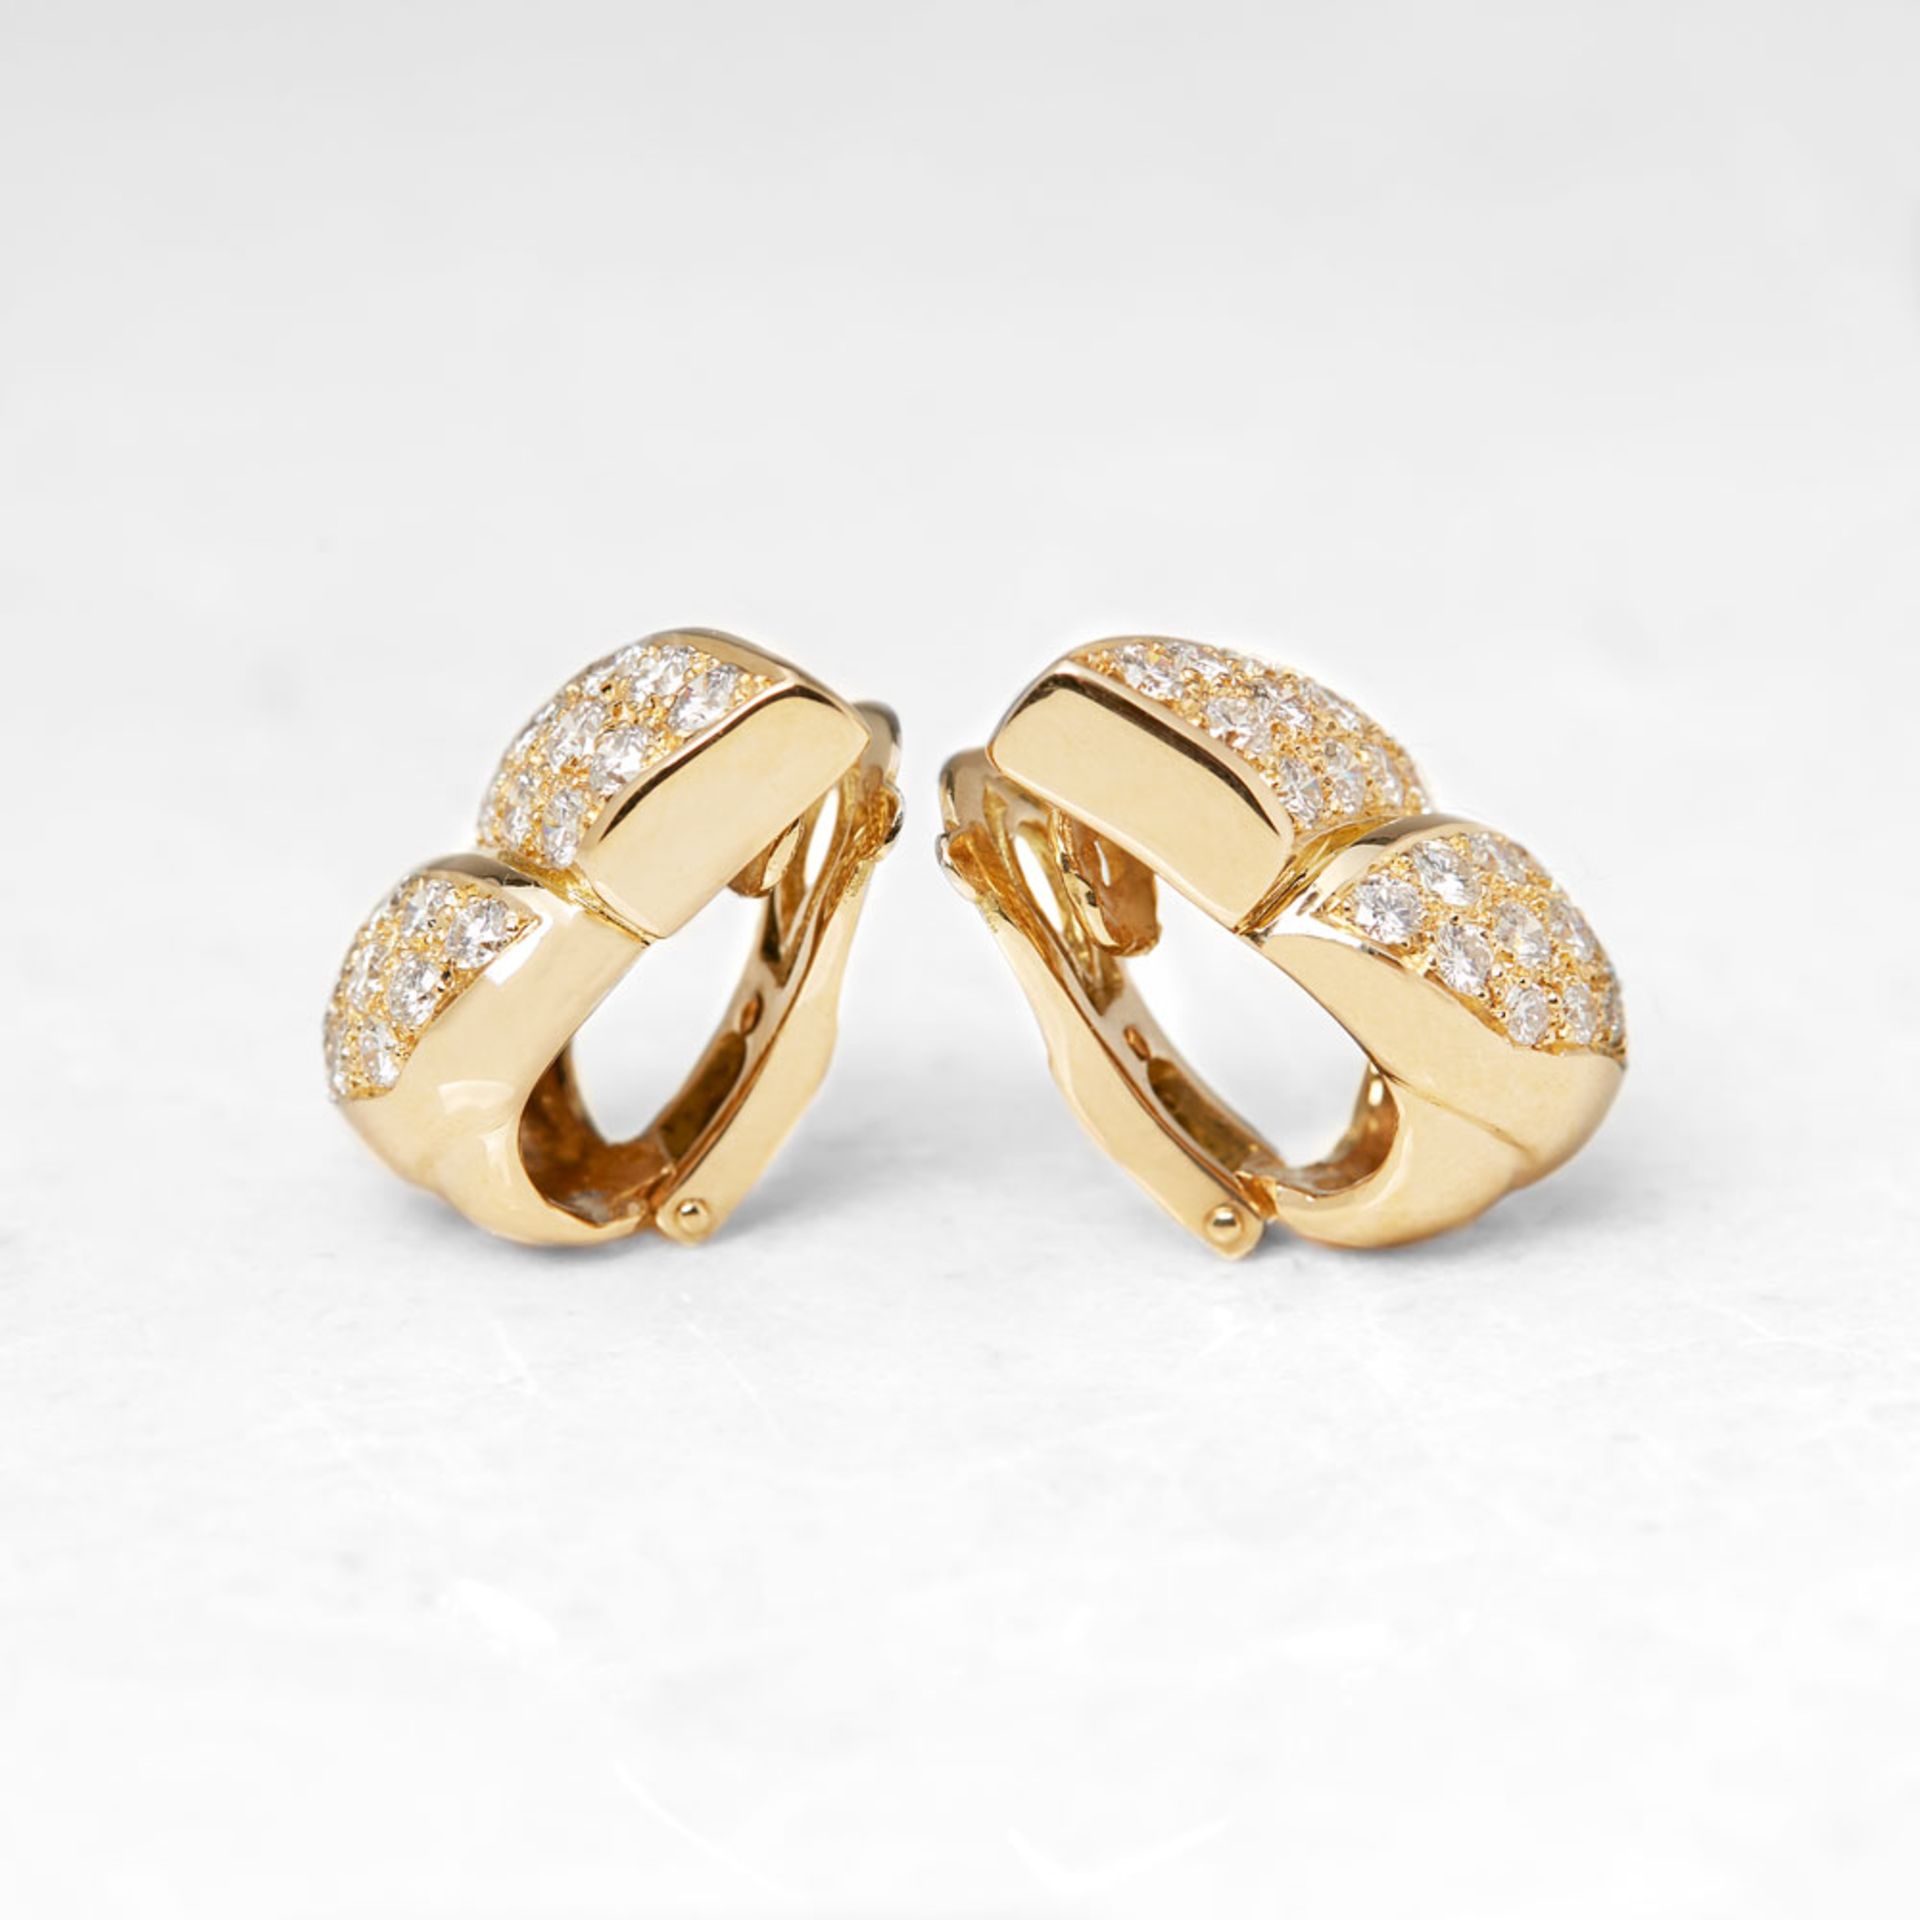 Van Cleef & Arpels 18k Yellow Gold Diamond Earrings - Image 2 of 7